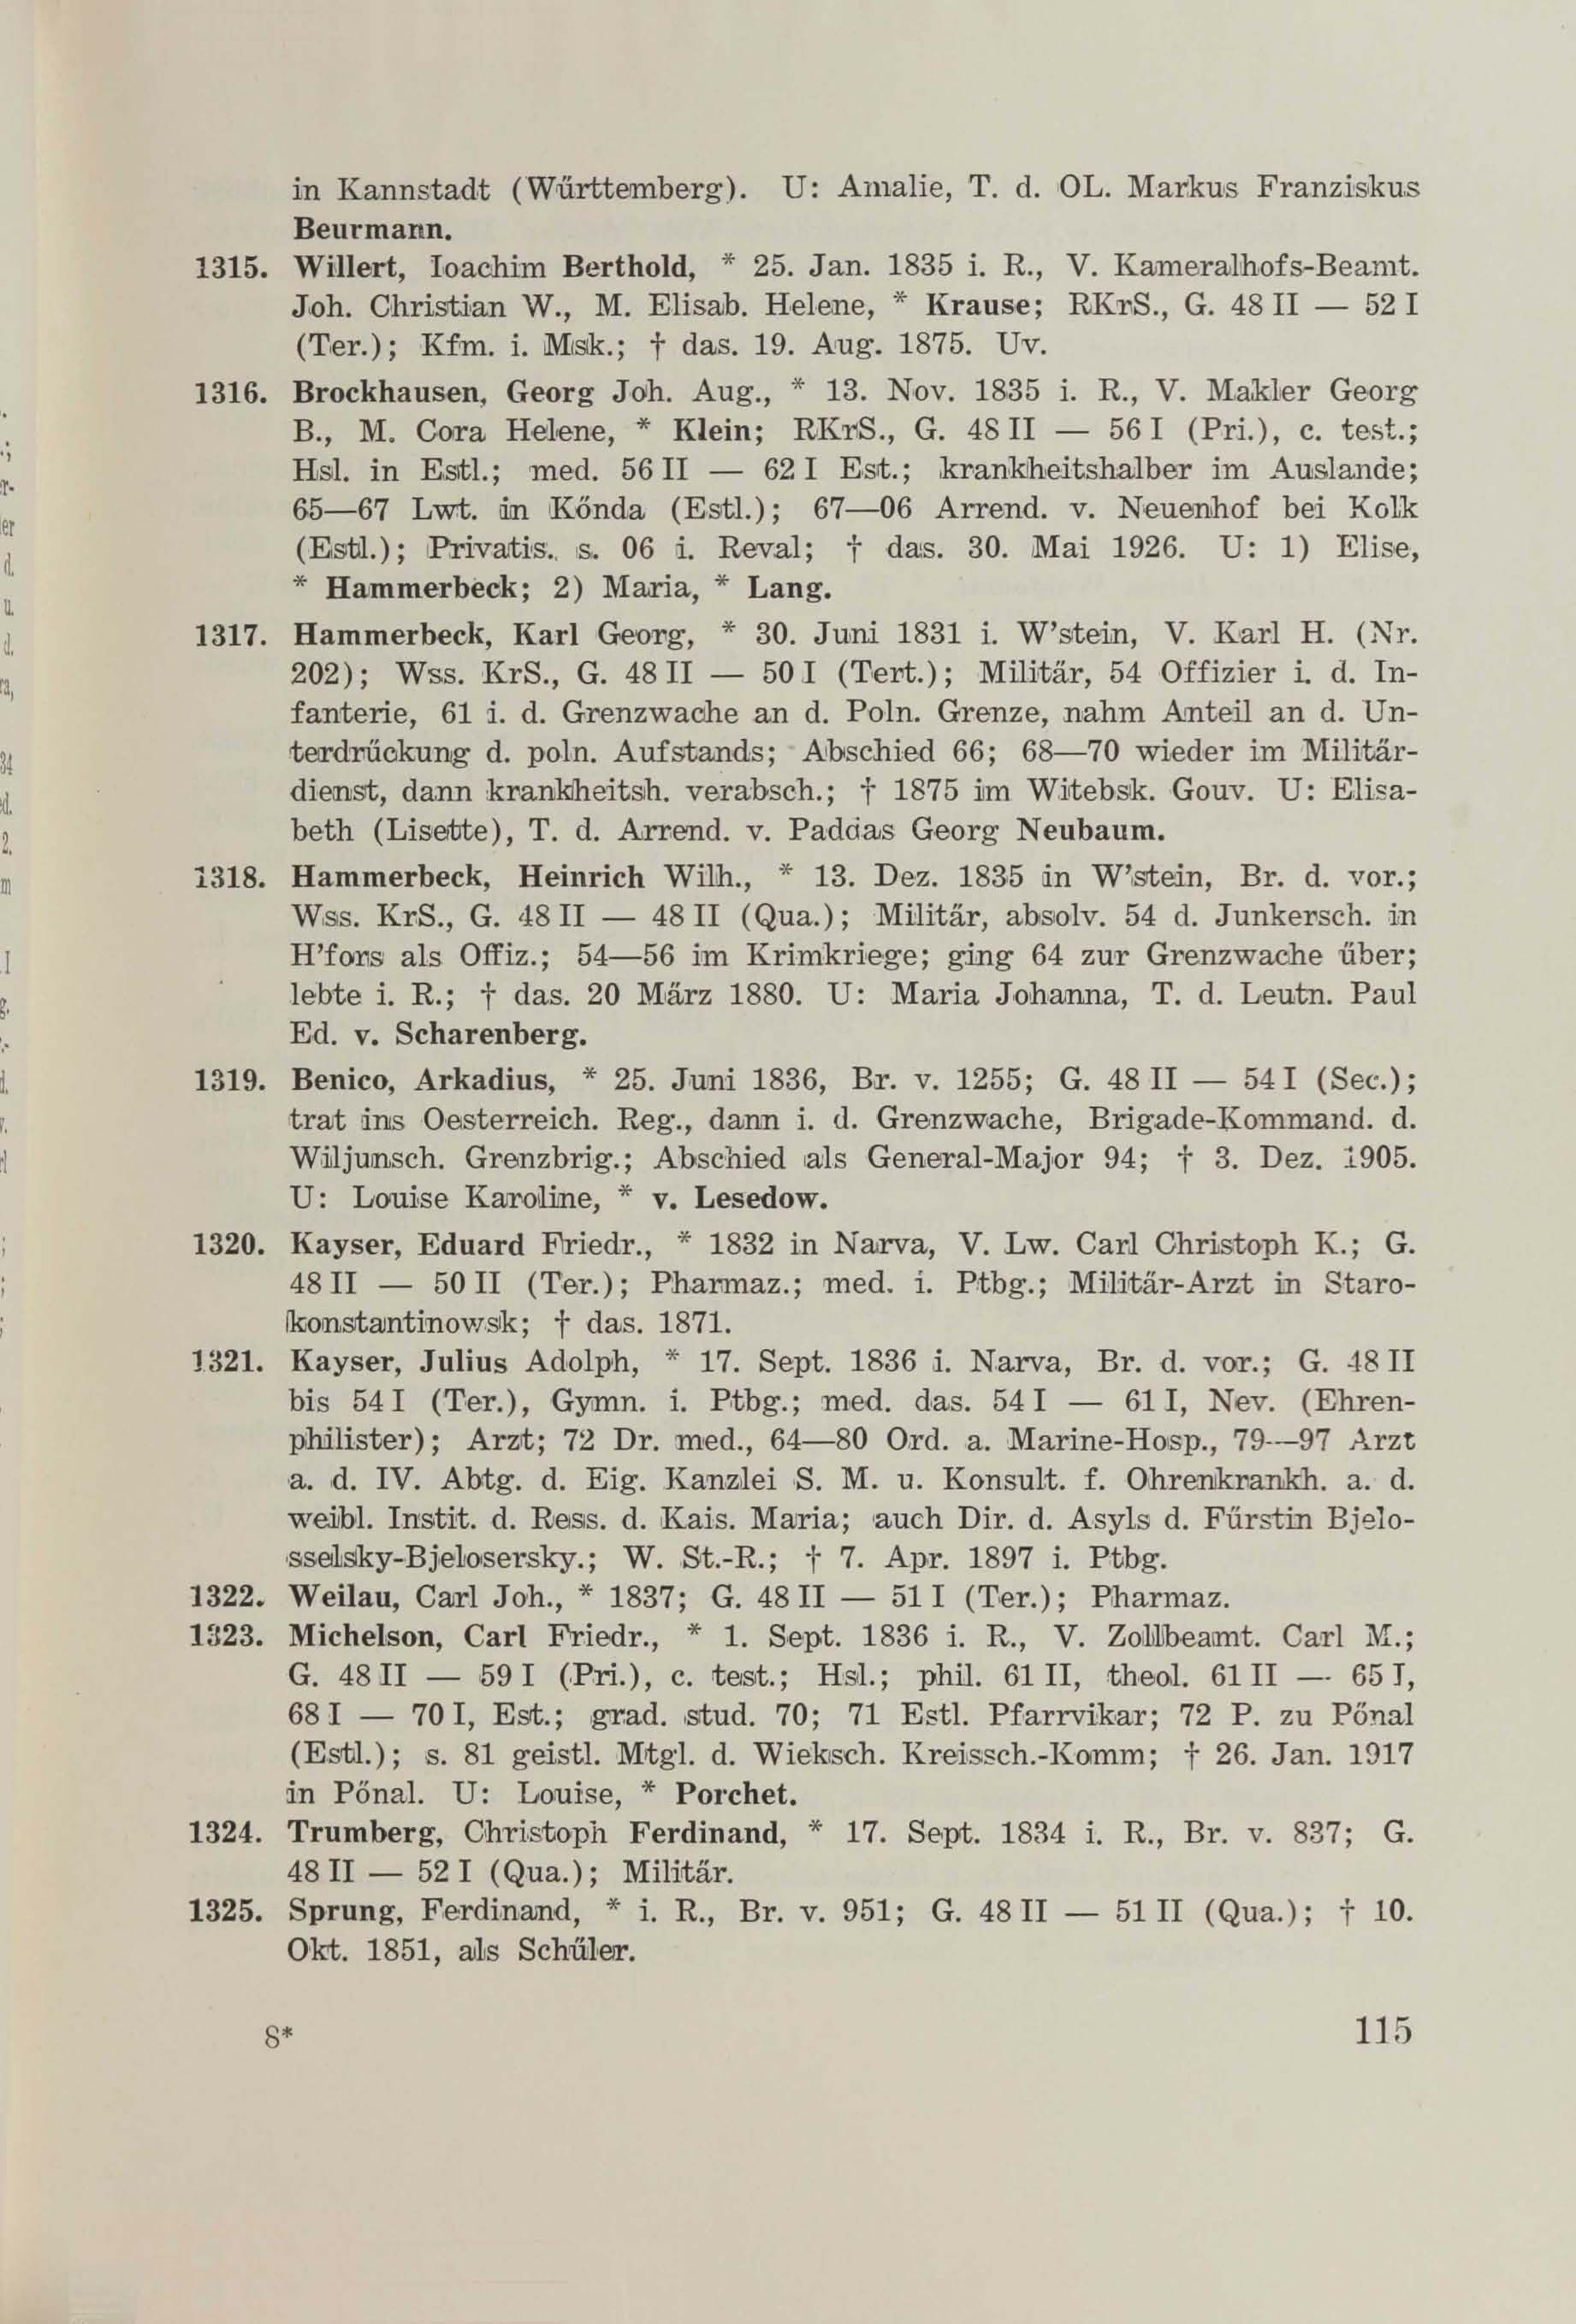 Schüler-Verzeichnis des Revalschen Gouvernements-Gymnasiums 1805–1890 (1931) | 125. (115) Main body of text